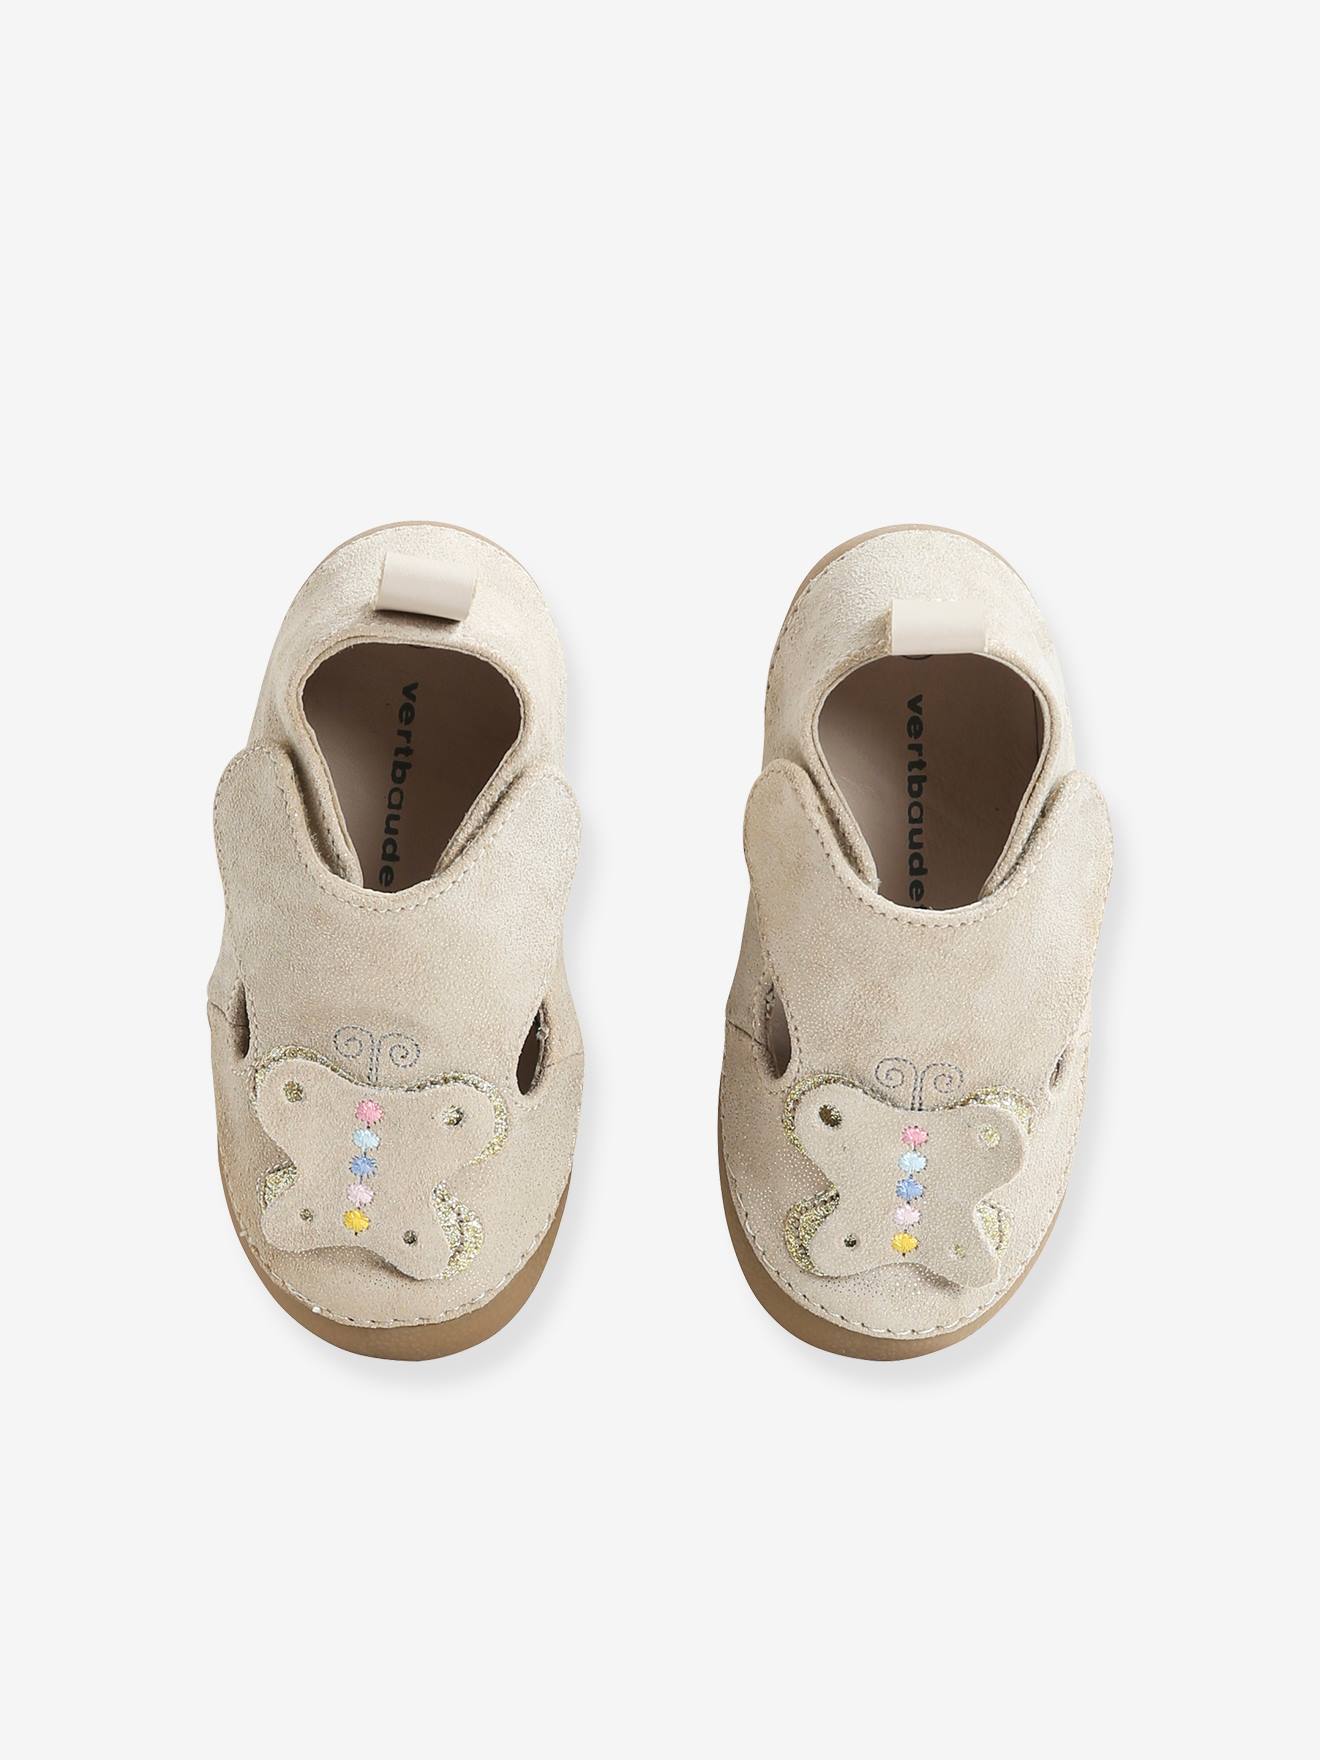 Filles sandales bébé chaussons chaussures en cuir antibactérien semelle tailles uk 3-9 